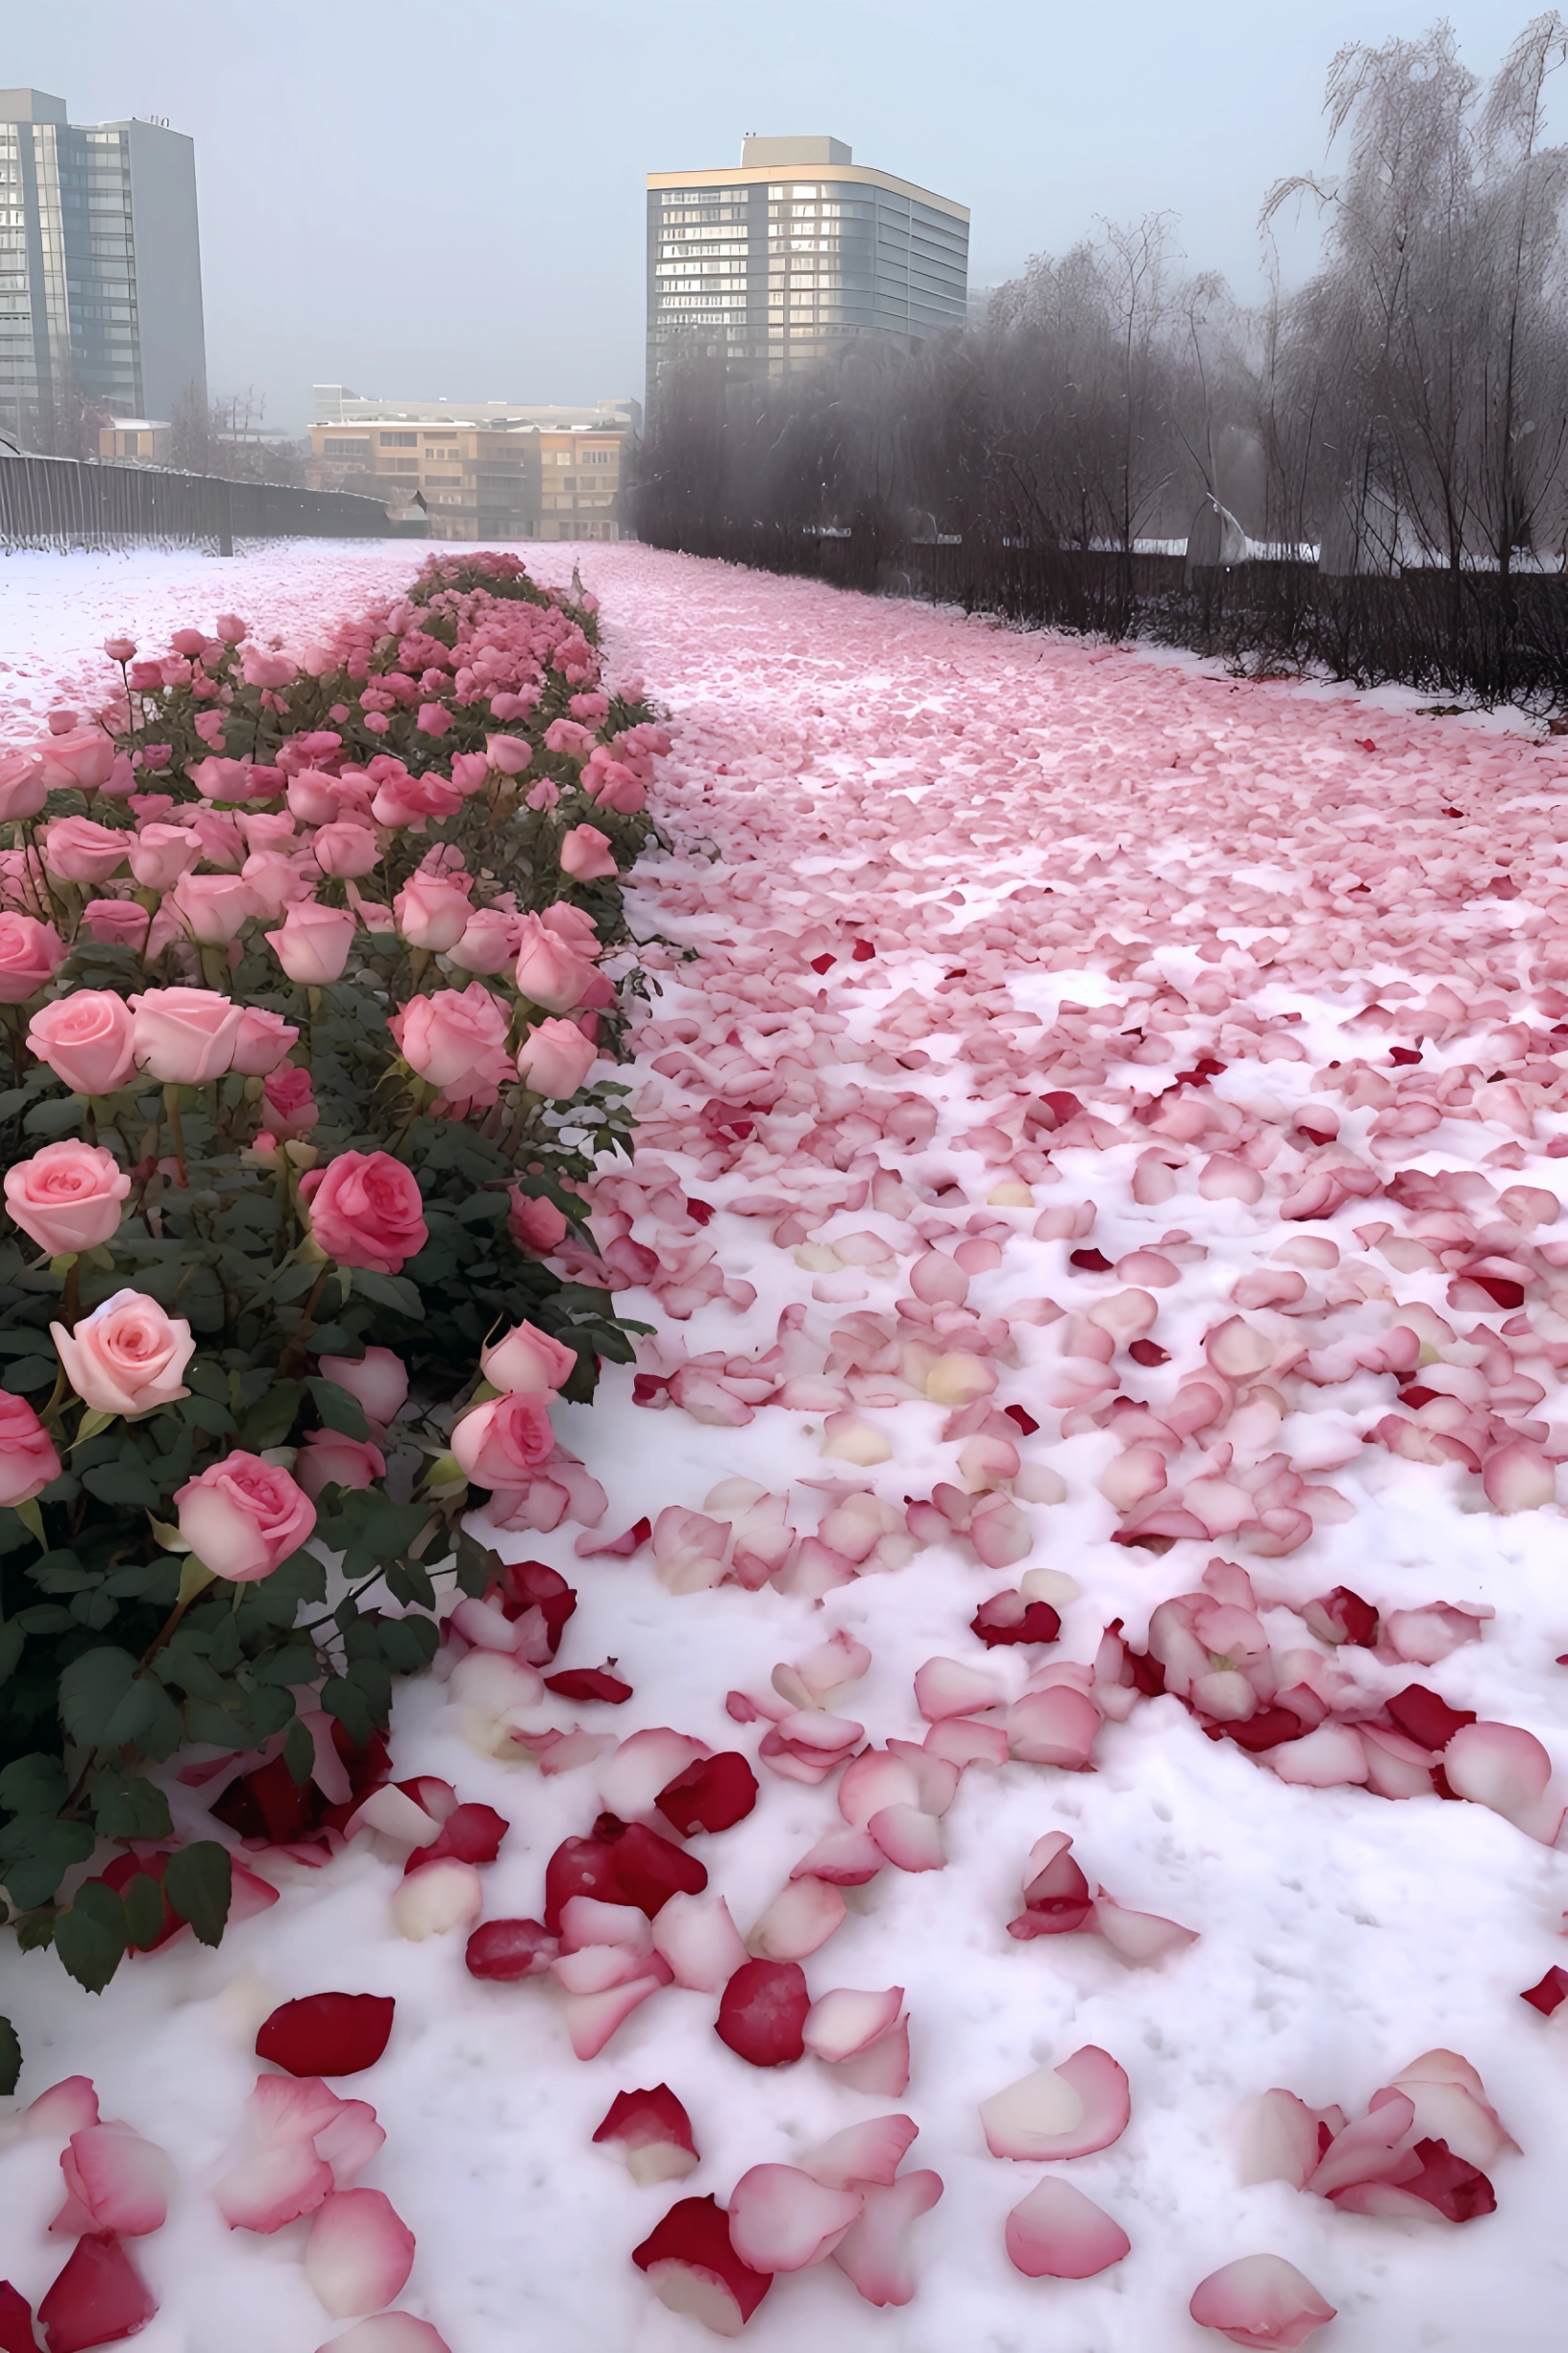 冰雪玫瑰 浪漫的场景，都想和你一起看。 #玫瑰旅行日志 #假装在国外 #这里看夜景超美 #这些国内海